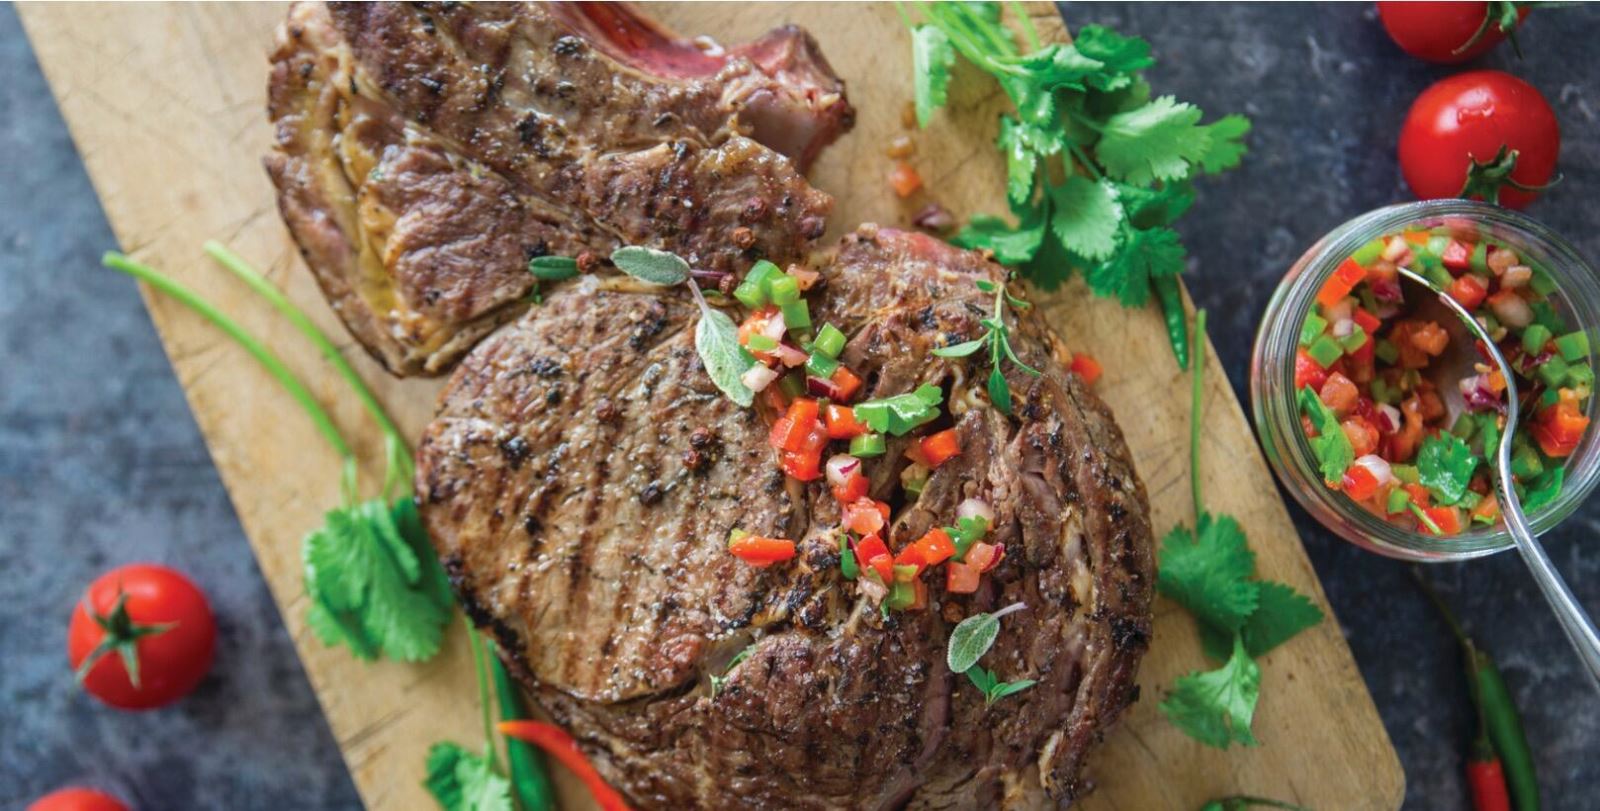 Prime rib steak with criolla salsa